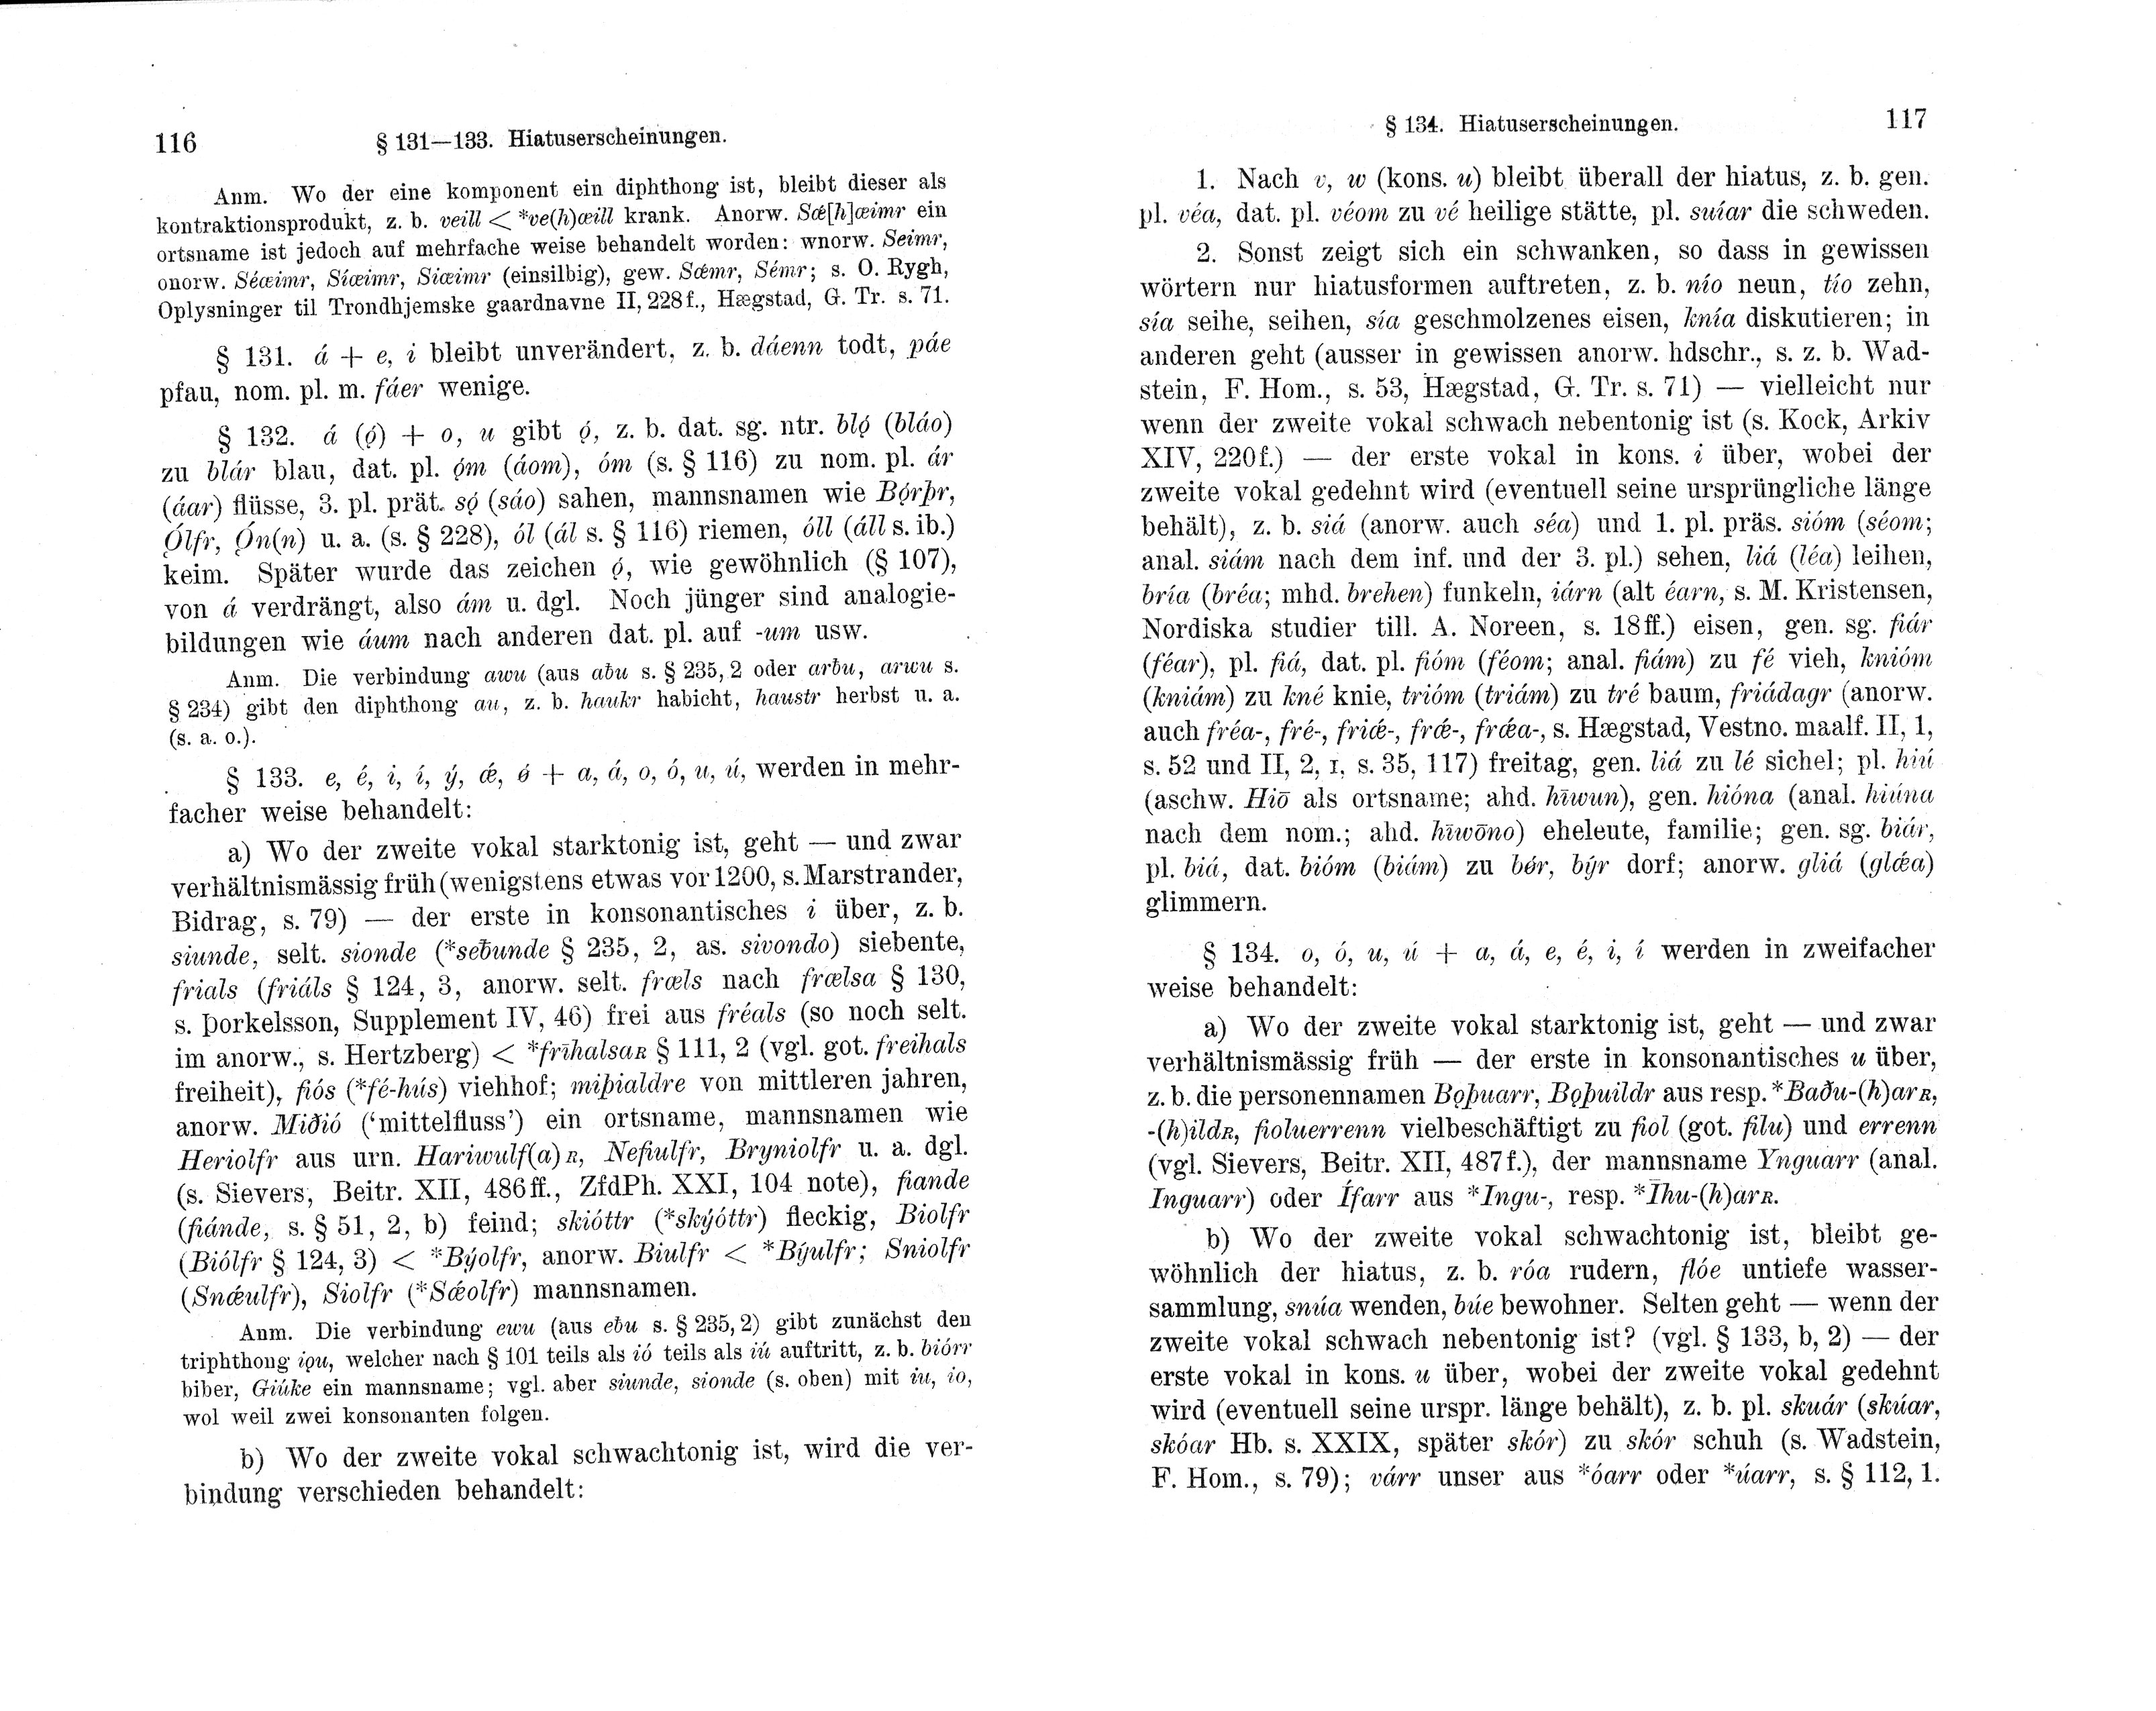 Noreen S. 116-117